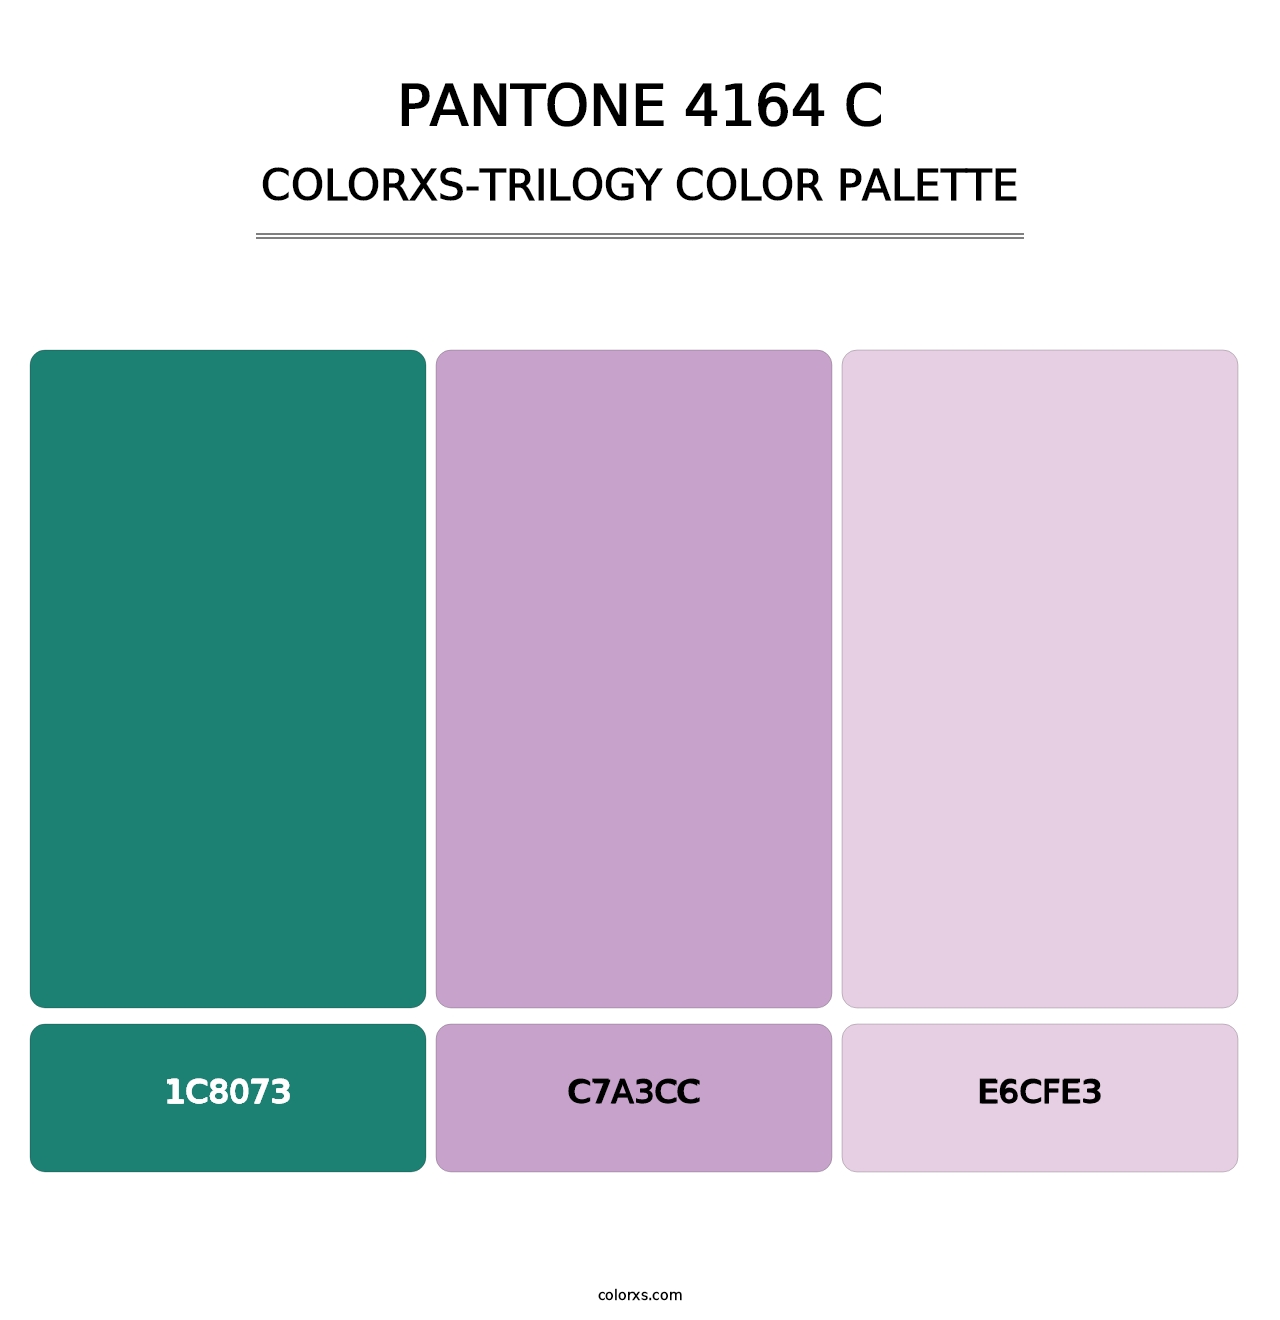 PANTONE 4164 C - Colorxs Trilogy Palette